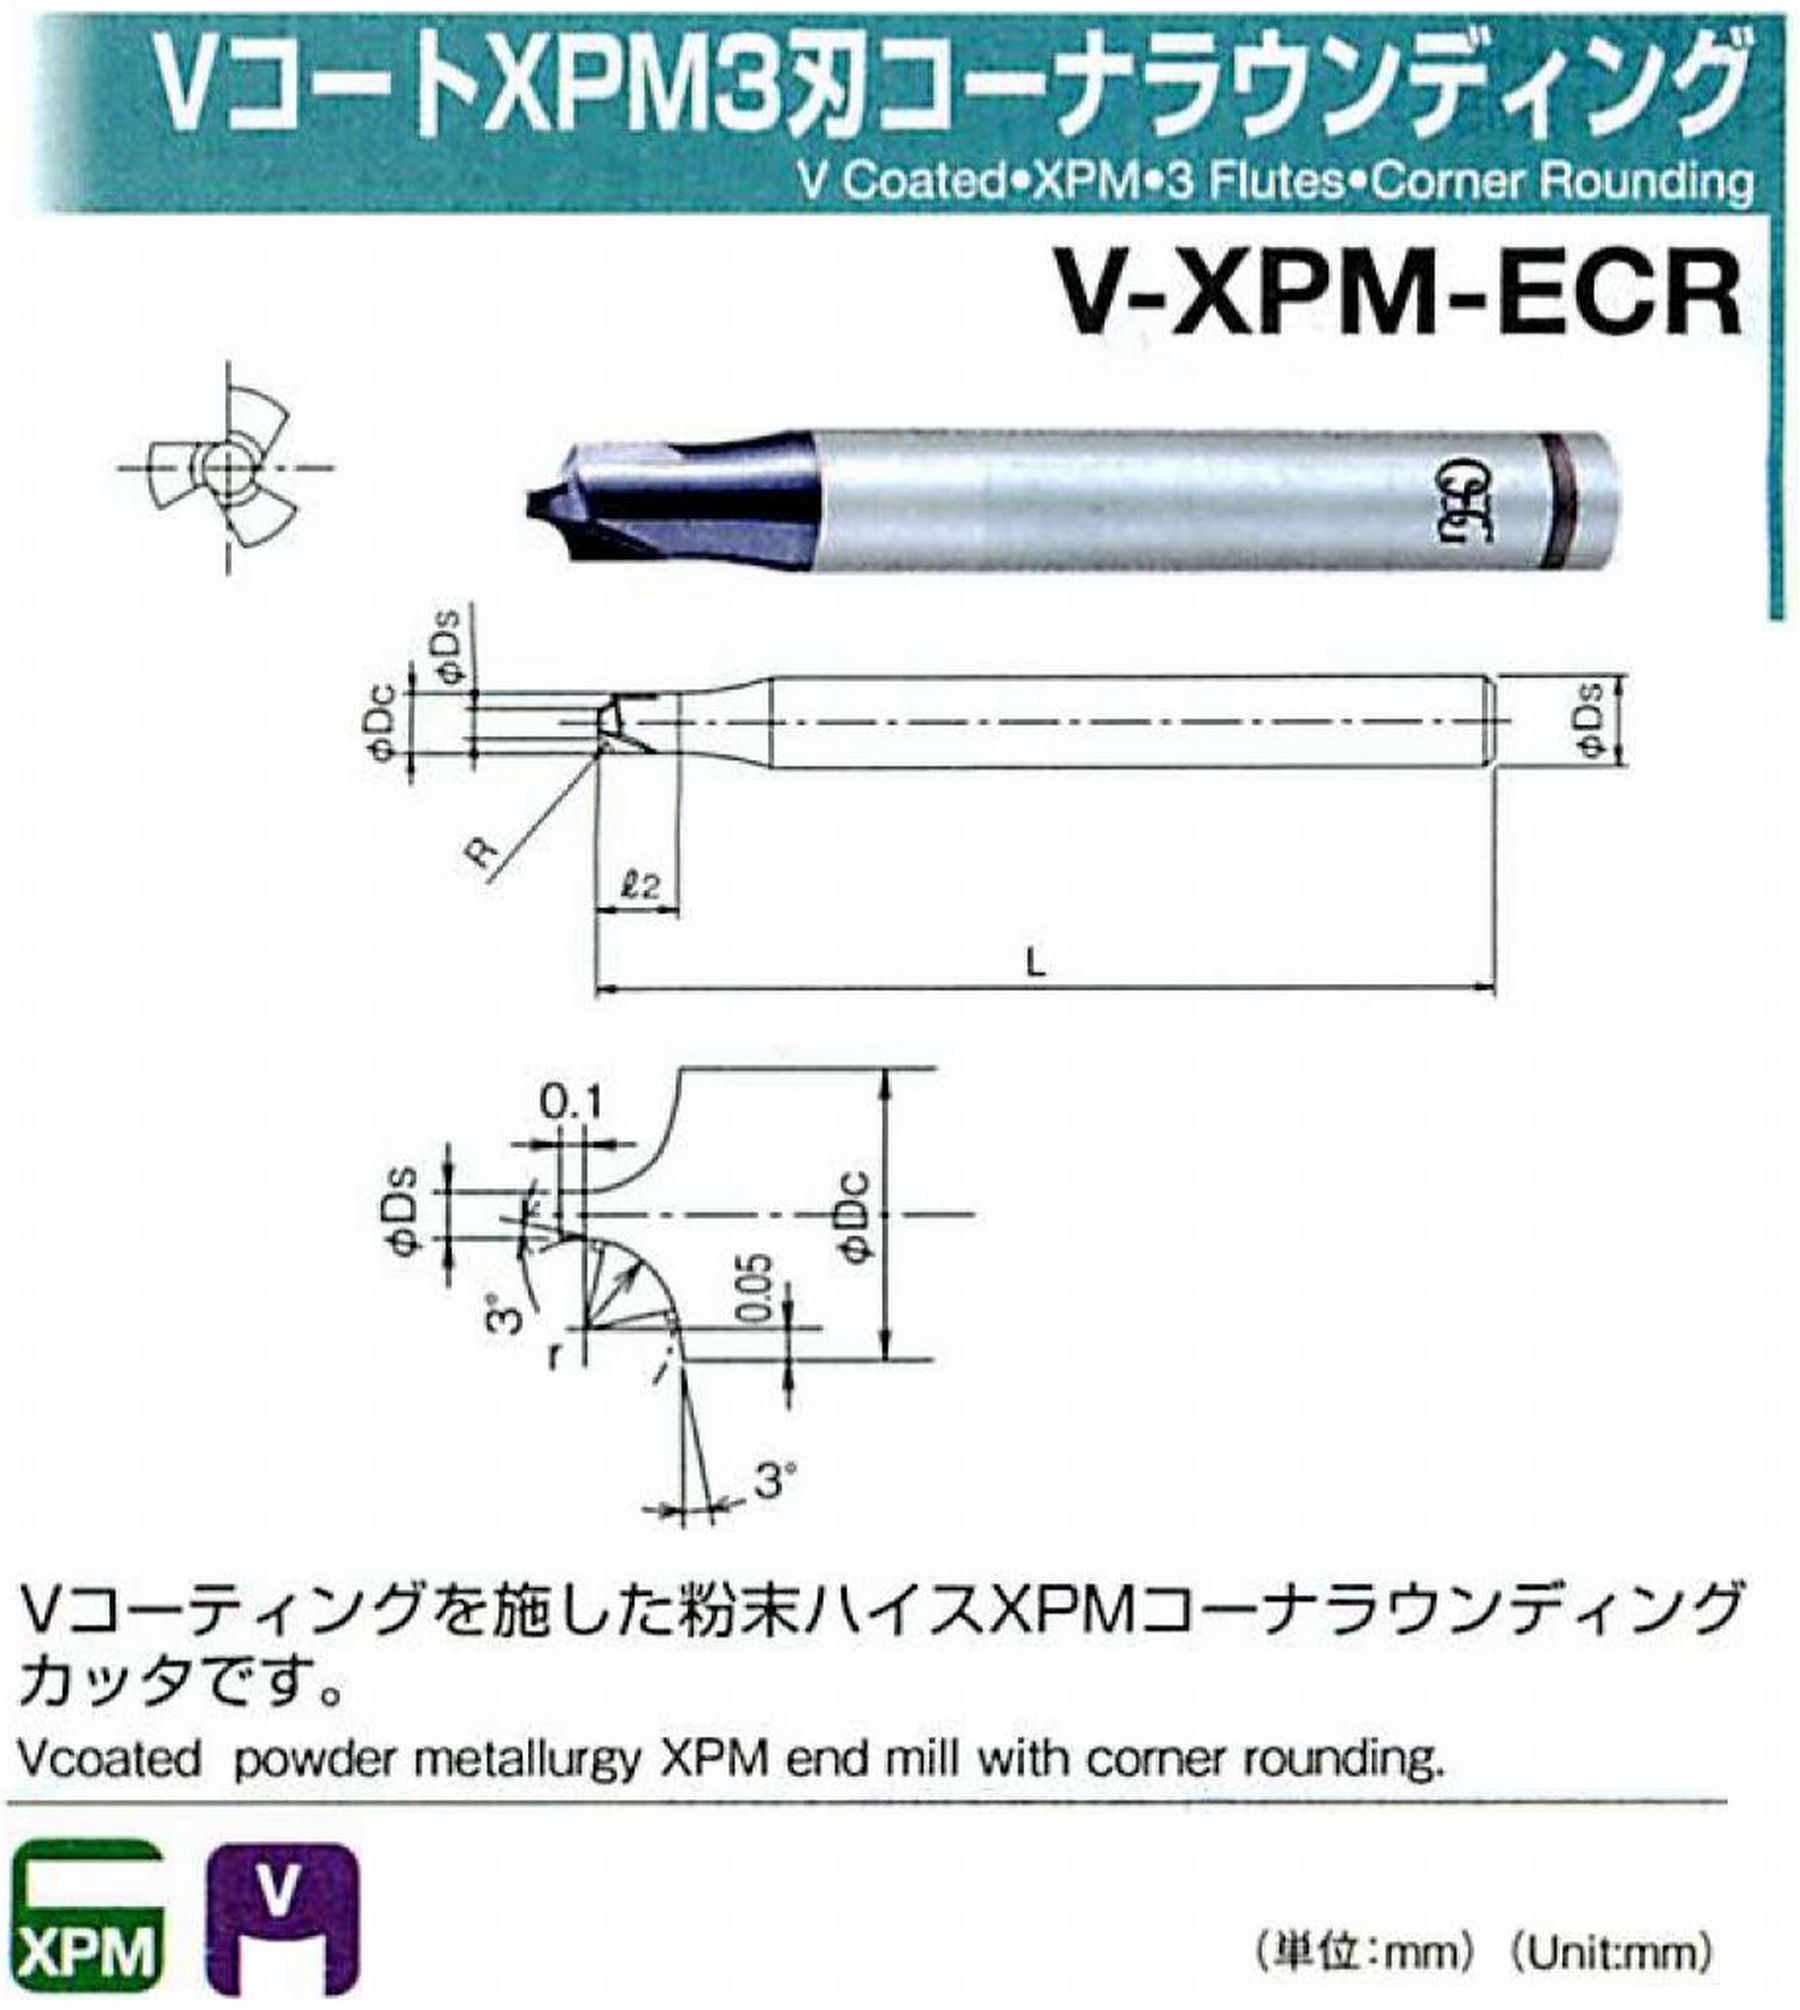 オーエスジー/OSG VコートXPM3刃 コーナラウンディング V-XPM-ECR 先端角×コーナ半径2×R4 外径10 全長60 シャンク径10mm 首下長-